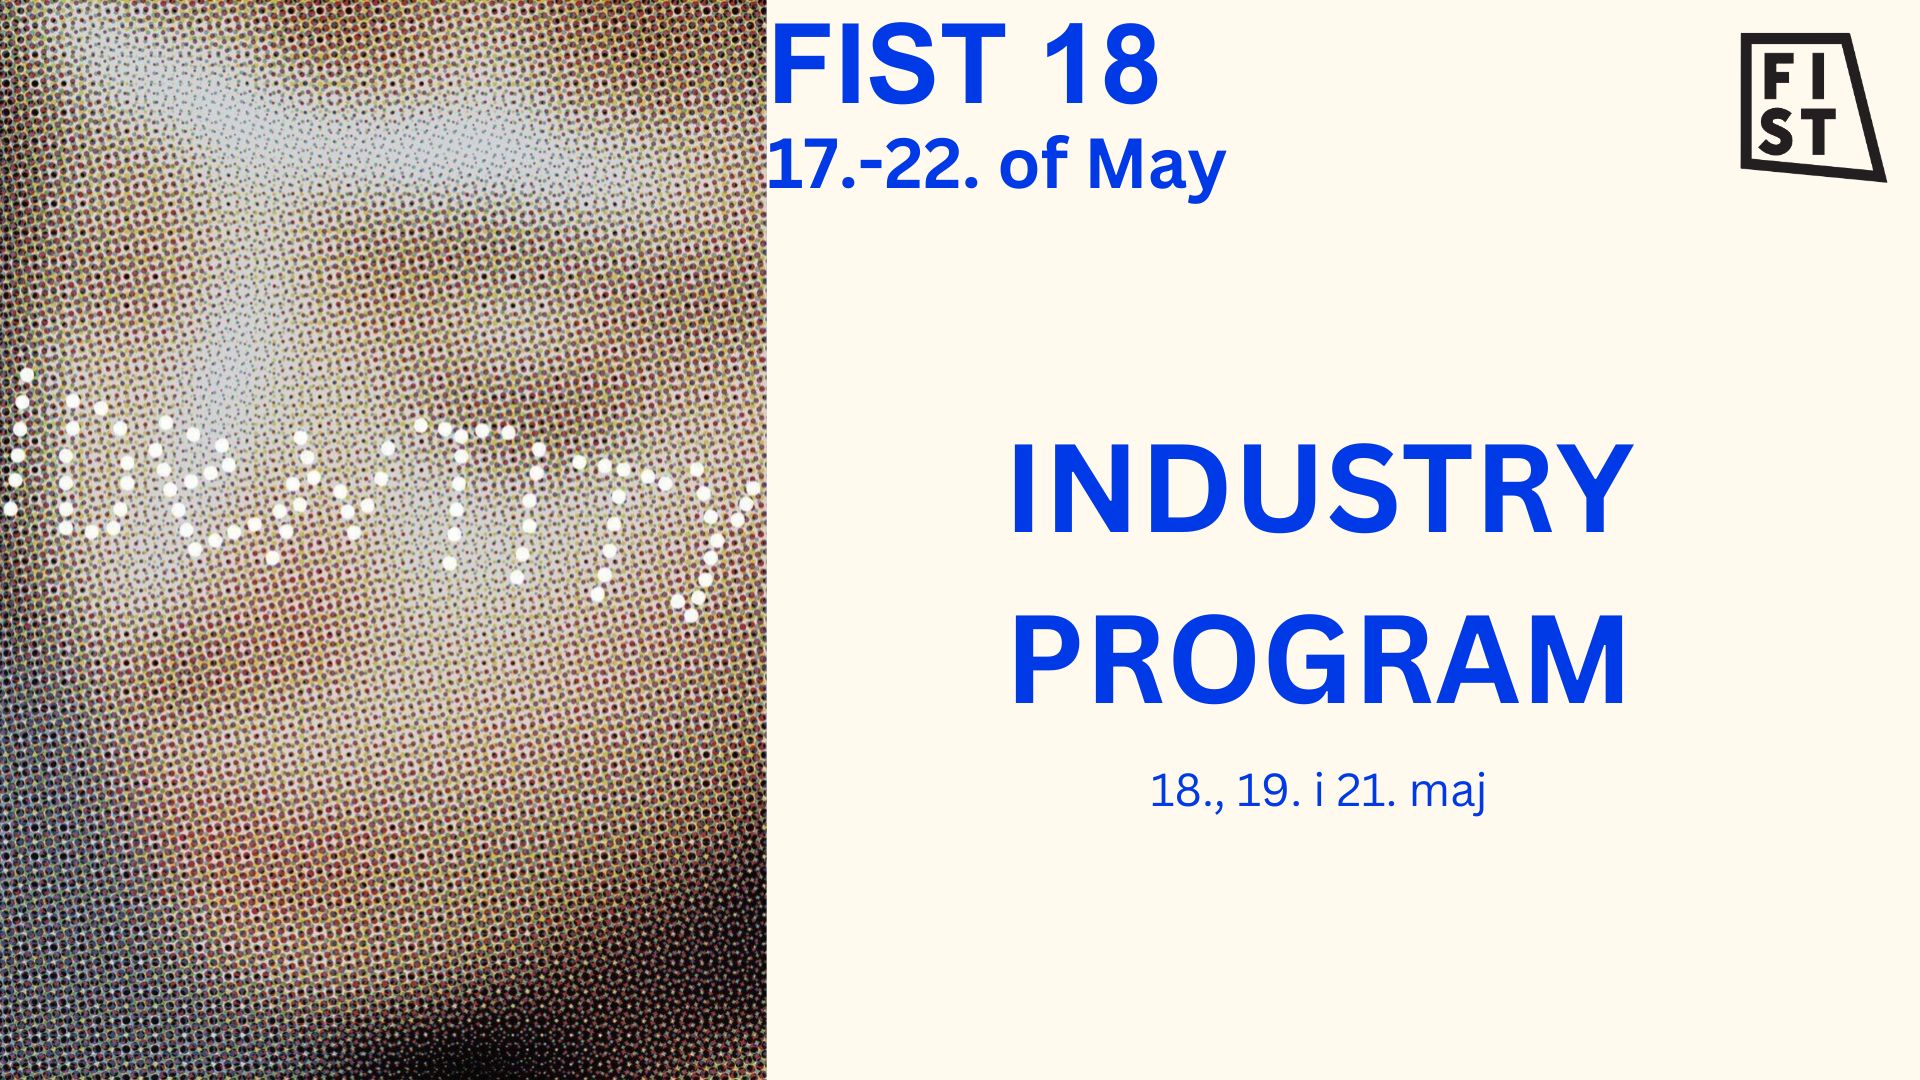 Poziv za učešće na ovogodišnjem FIST 18 INDUSTRY programu